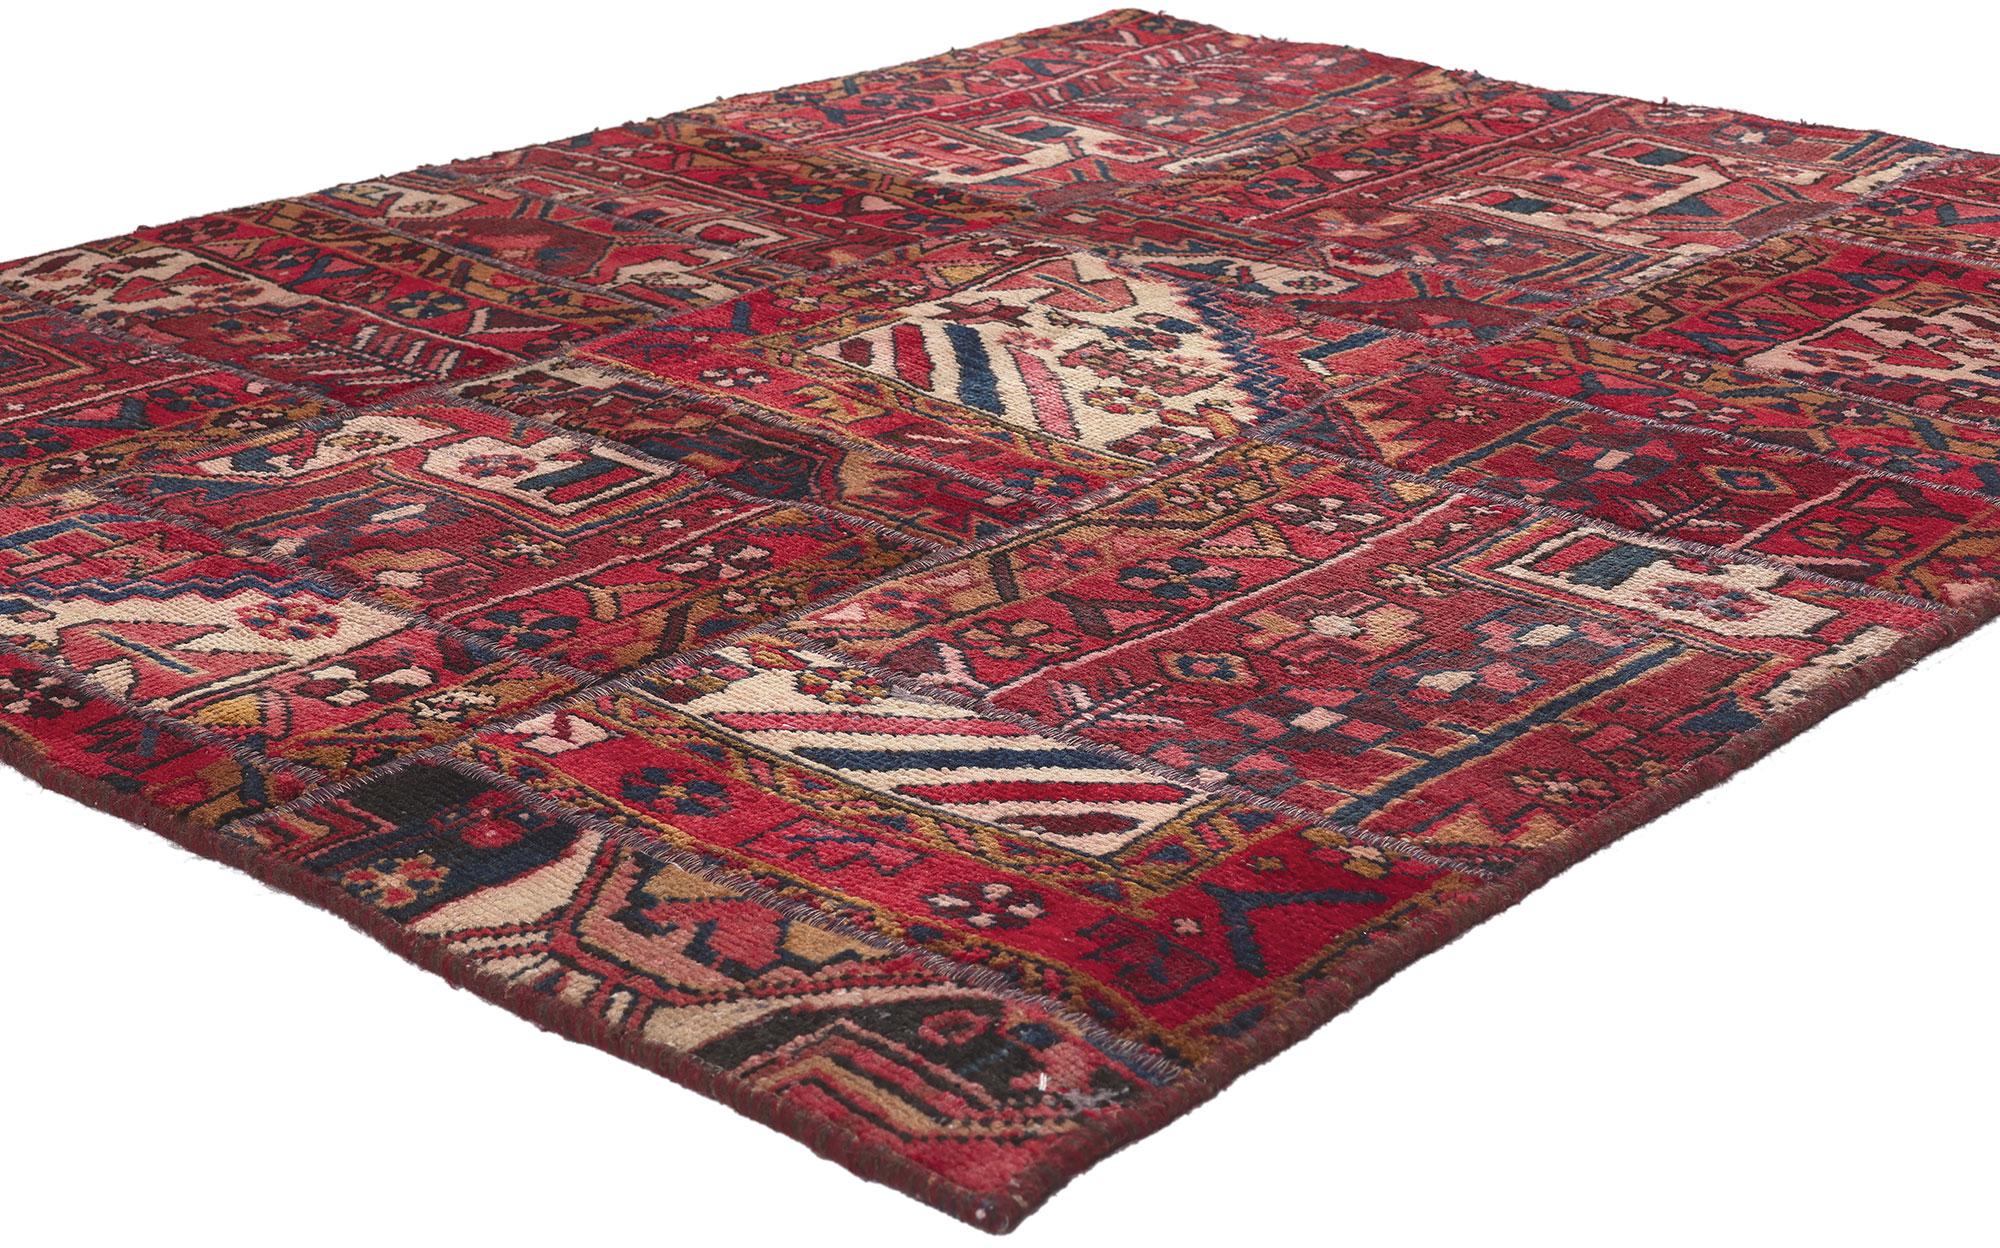 78578 Vintage Persischer Patchwork-Teppich, 04'03 x 05'04. 
Dieser persische Patchwork-Teppich im Vintage-Stil versprüht bukolischen Charme und traditionelle Sensibilität und ist eine fesselnde Vision gewebter Schönheit. Die Bachtiari-Muster und die